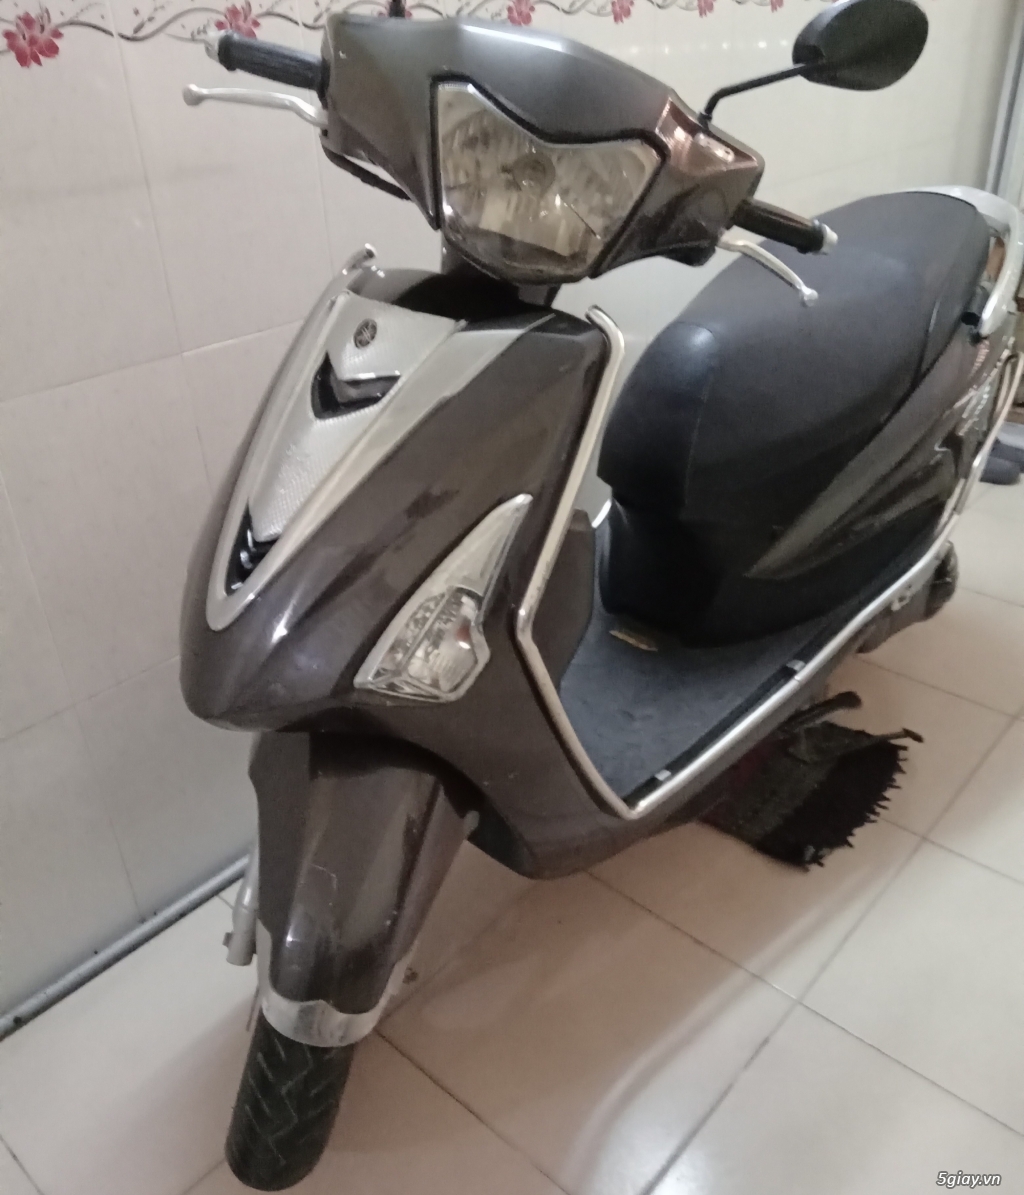 Yamaha Acruzo 2016 máy móc êm ru    Giá 20 triệu  0917640608  Xe Hơi  Việt  Chợ Mua Bán Xe Ô Tô Xe Máy Xe Tải Xe Khách Online